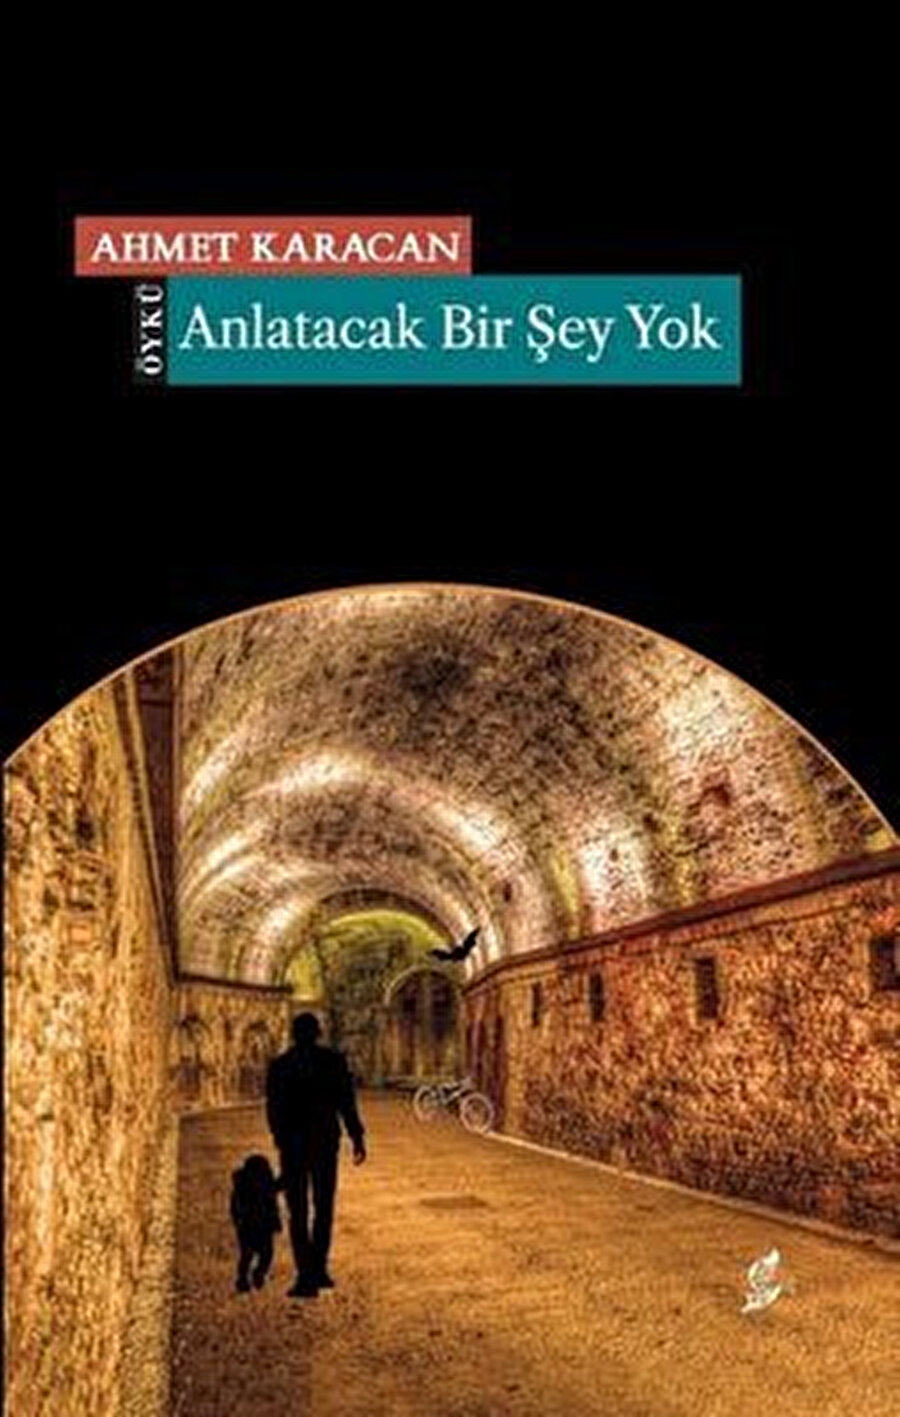 Ahmet Karacan'ın yeni kitabı "Anlatılacak Bir Şey Yok" toplam 16 öyküden oluşuyor.